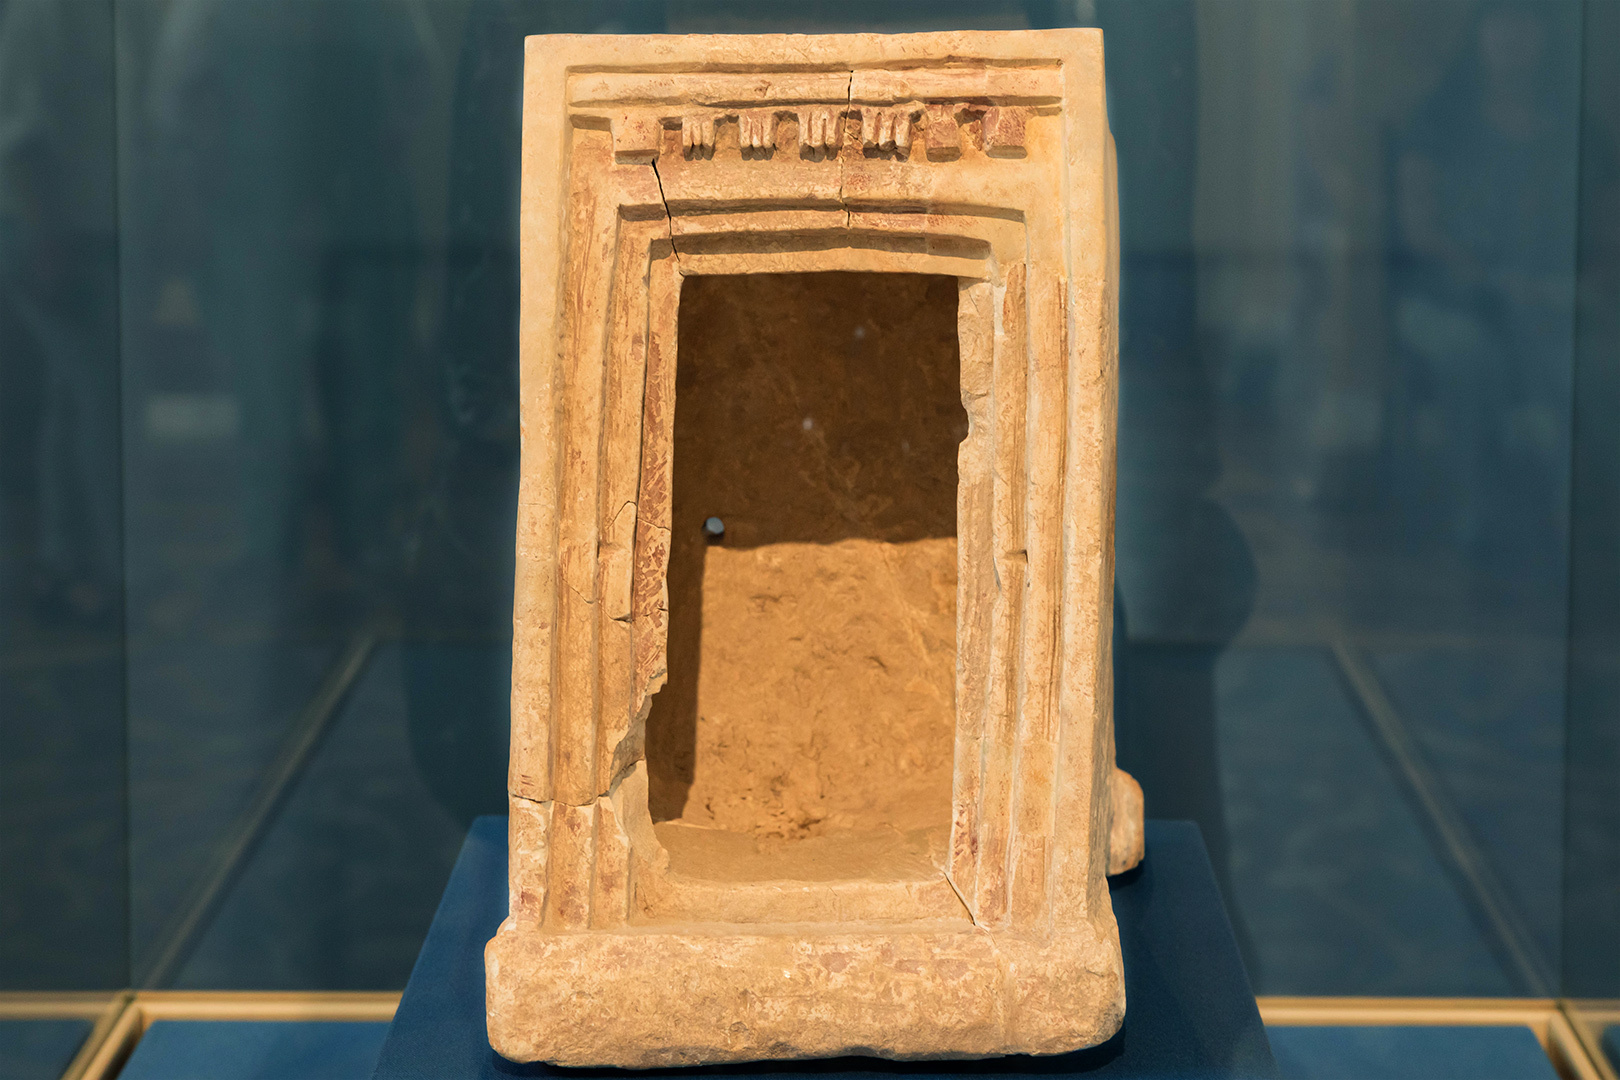 В Эрмитаже показали модель святилища, которую нашли в тридцати километрах от Иерусалима. Ей порядка трёх тысяч лет